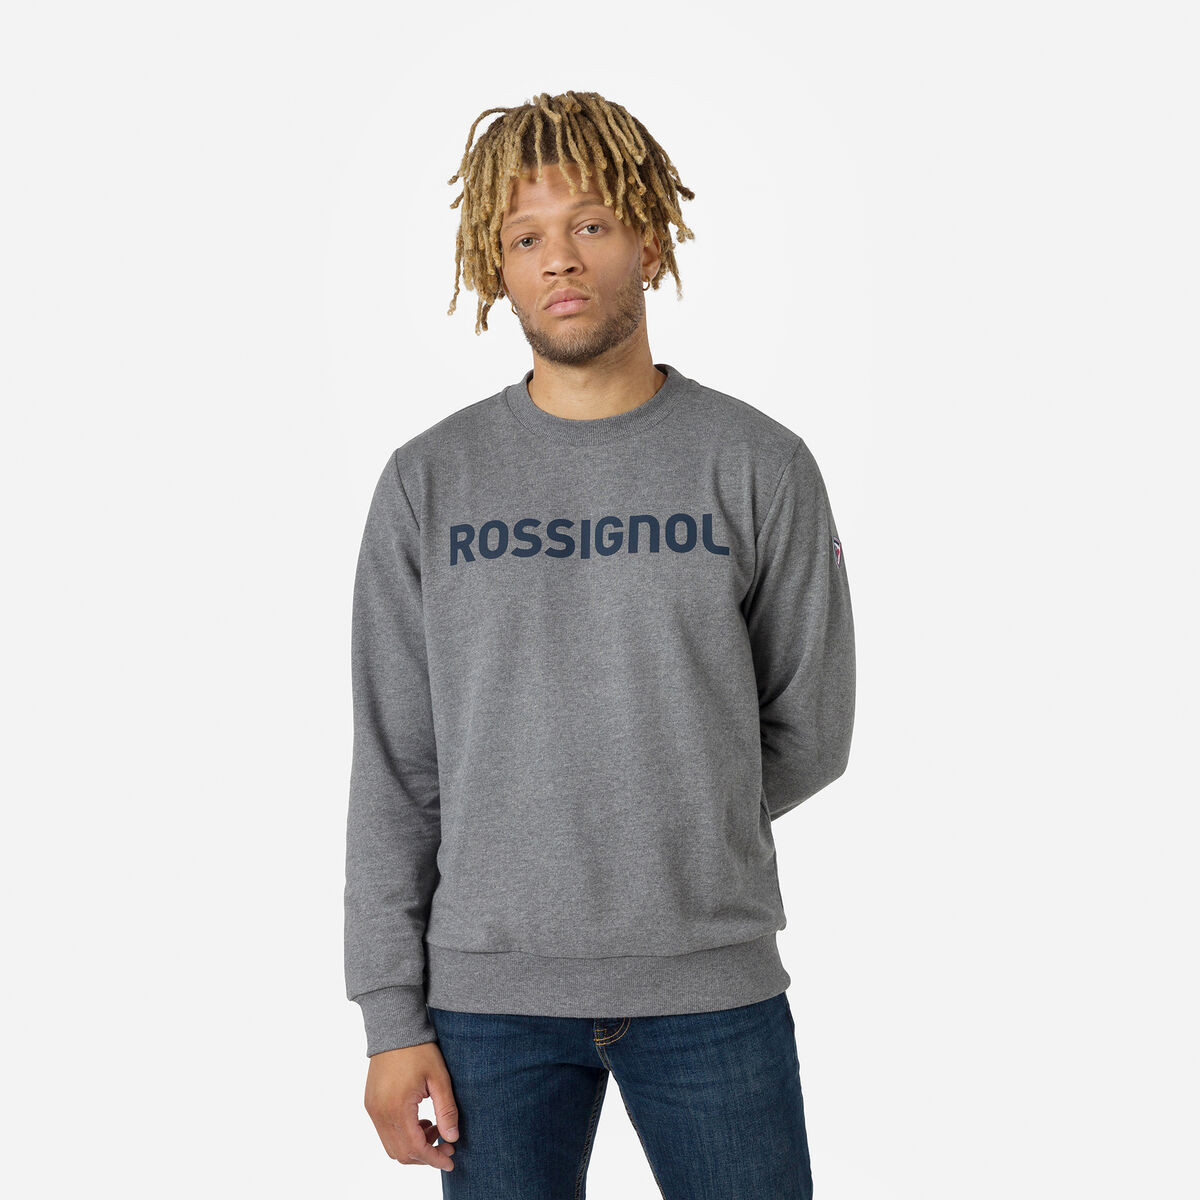 Rossignol Men's logo cotton sweatshirt round neck Grey